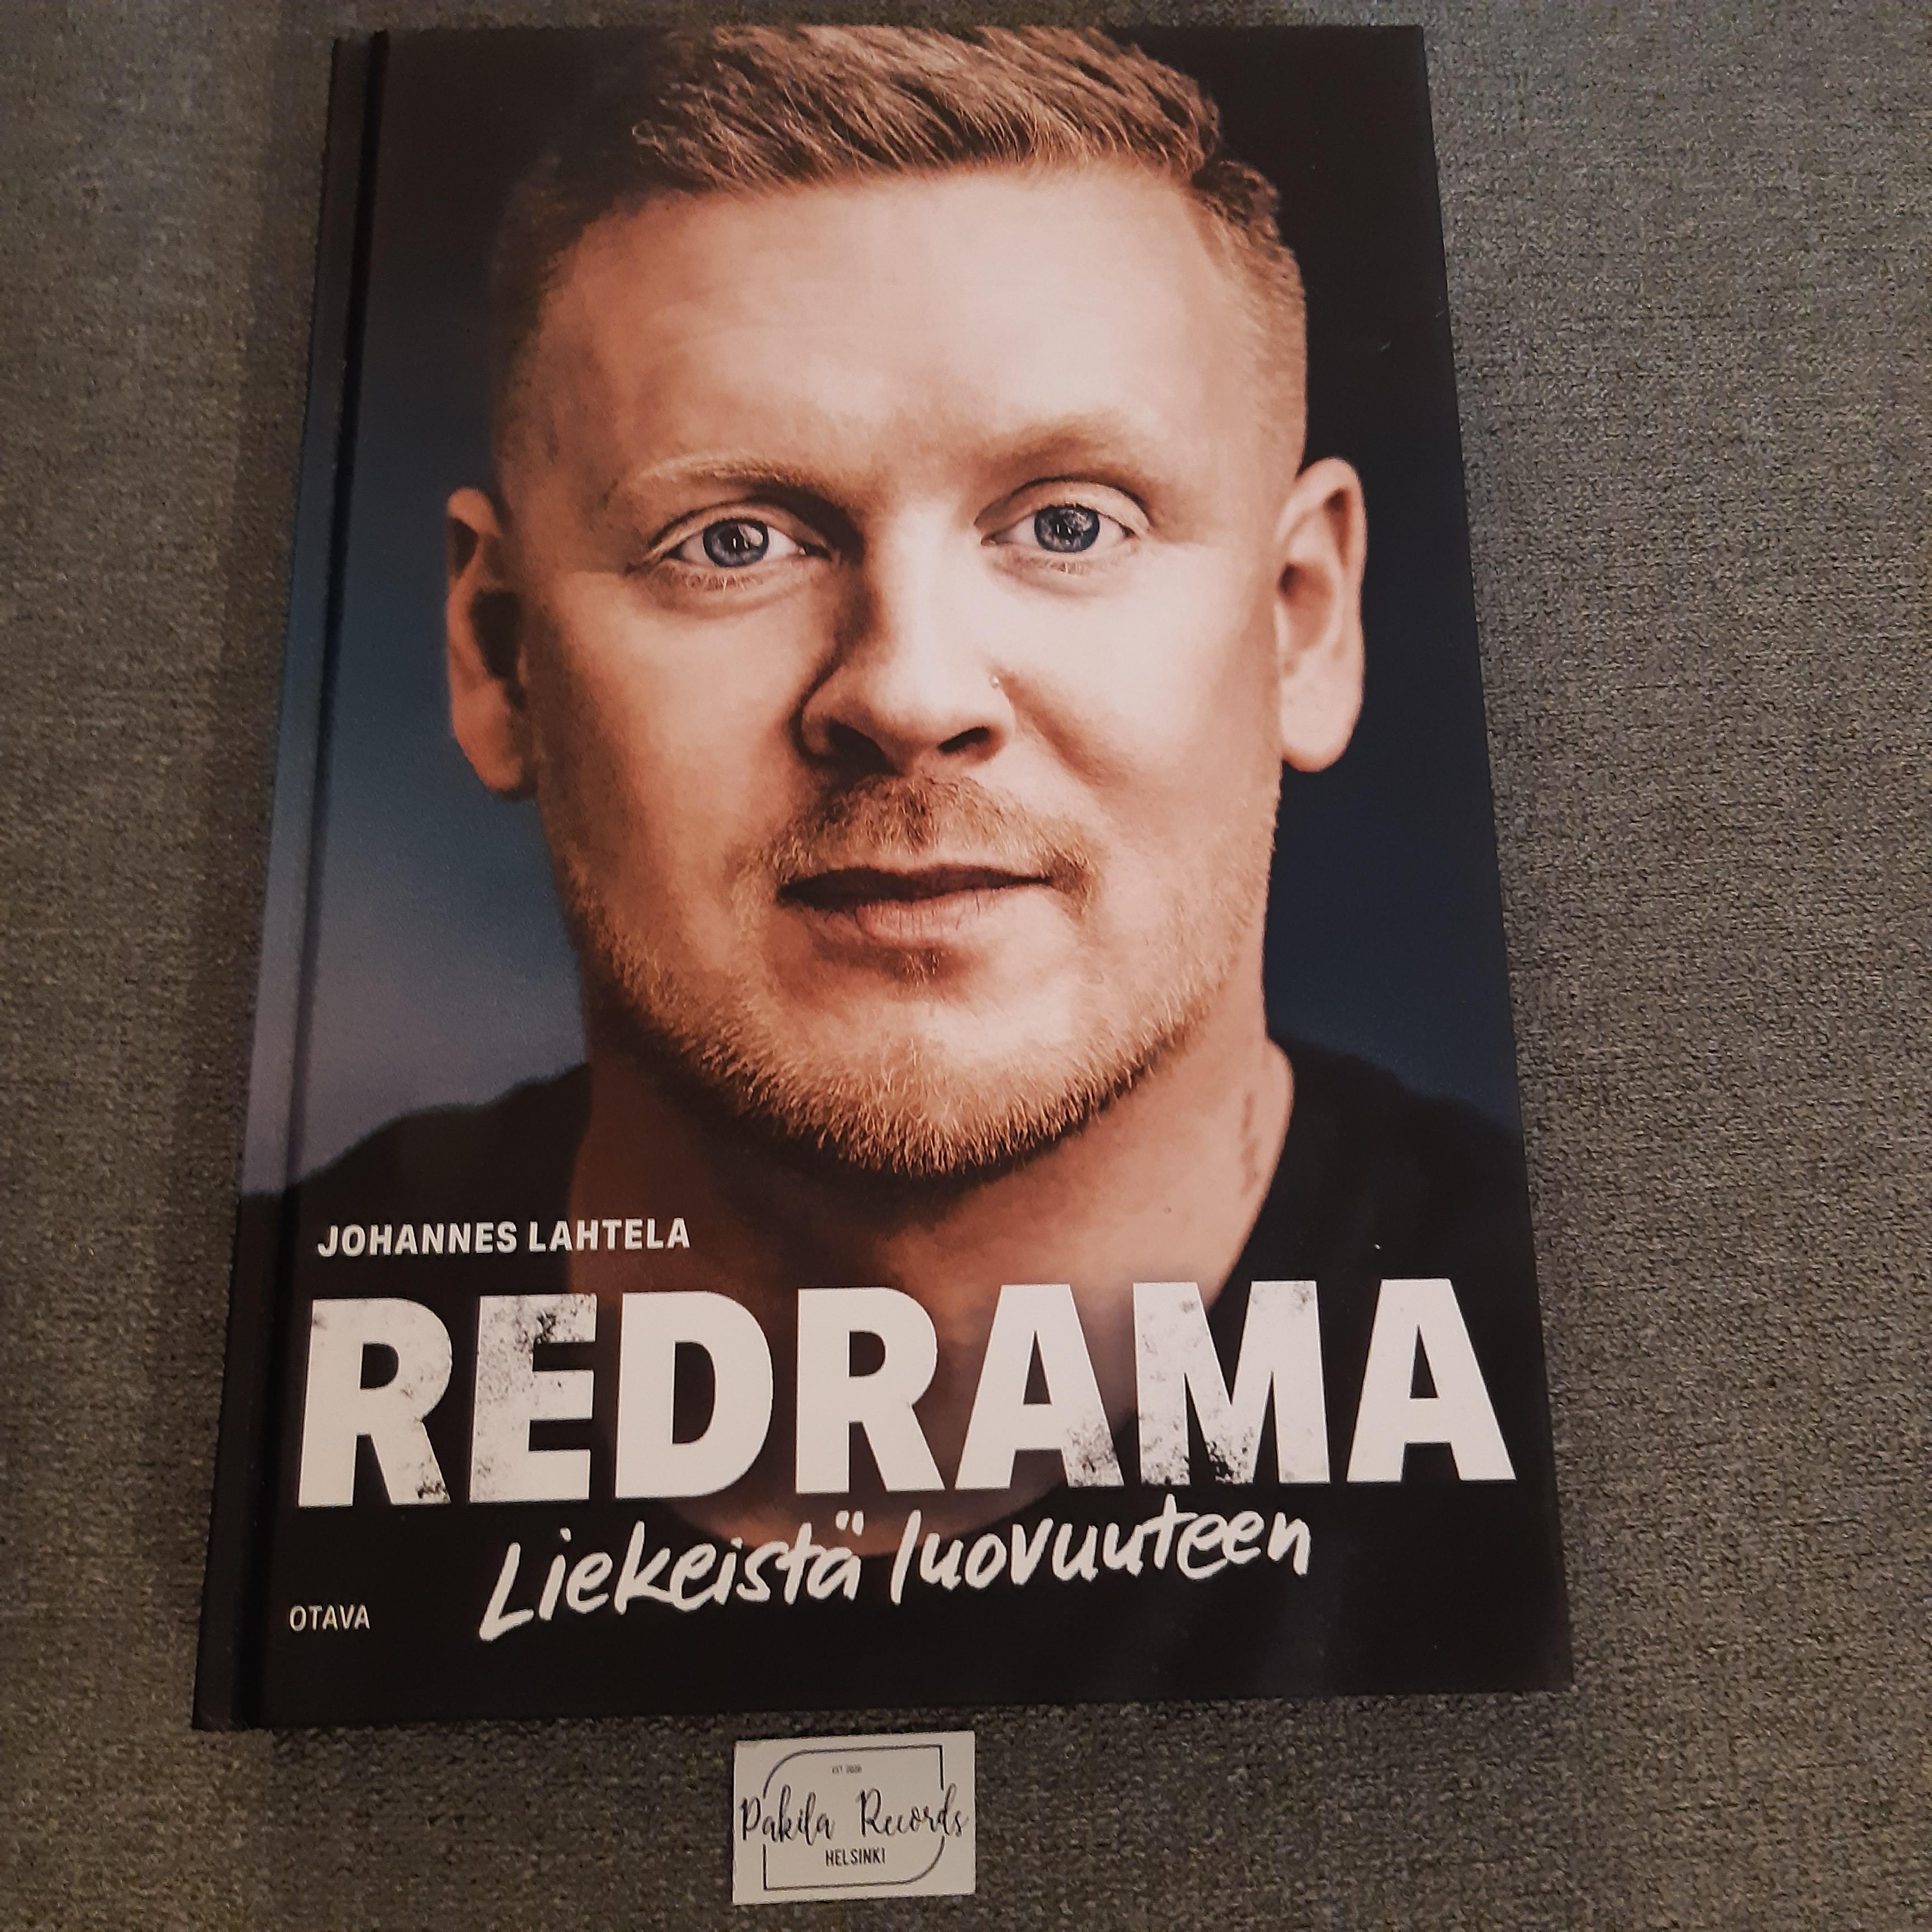 Redrama, Liekeistä luovuuteen - Johannes Lahtela - Kirja (käytetty)